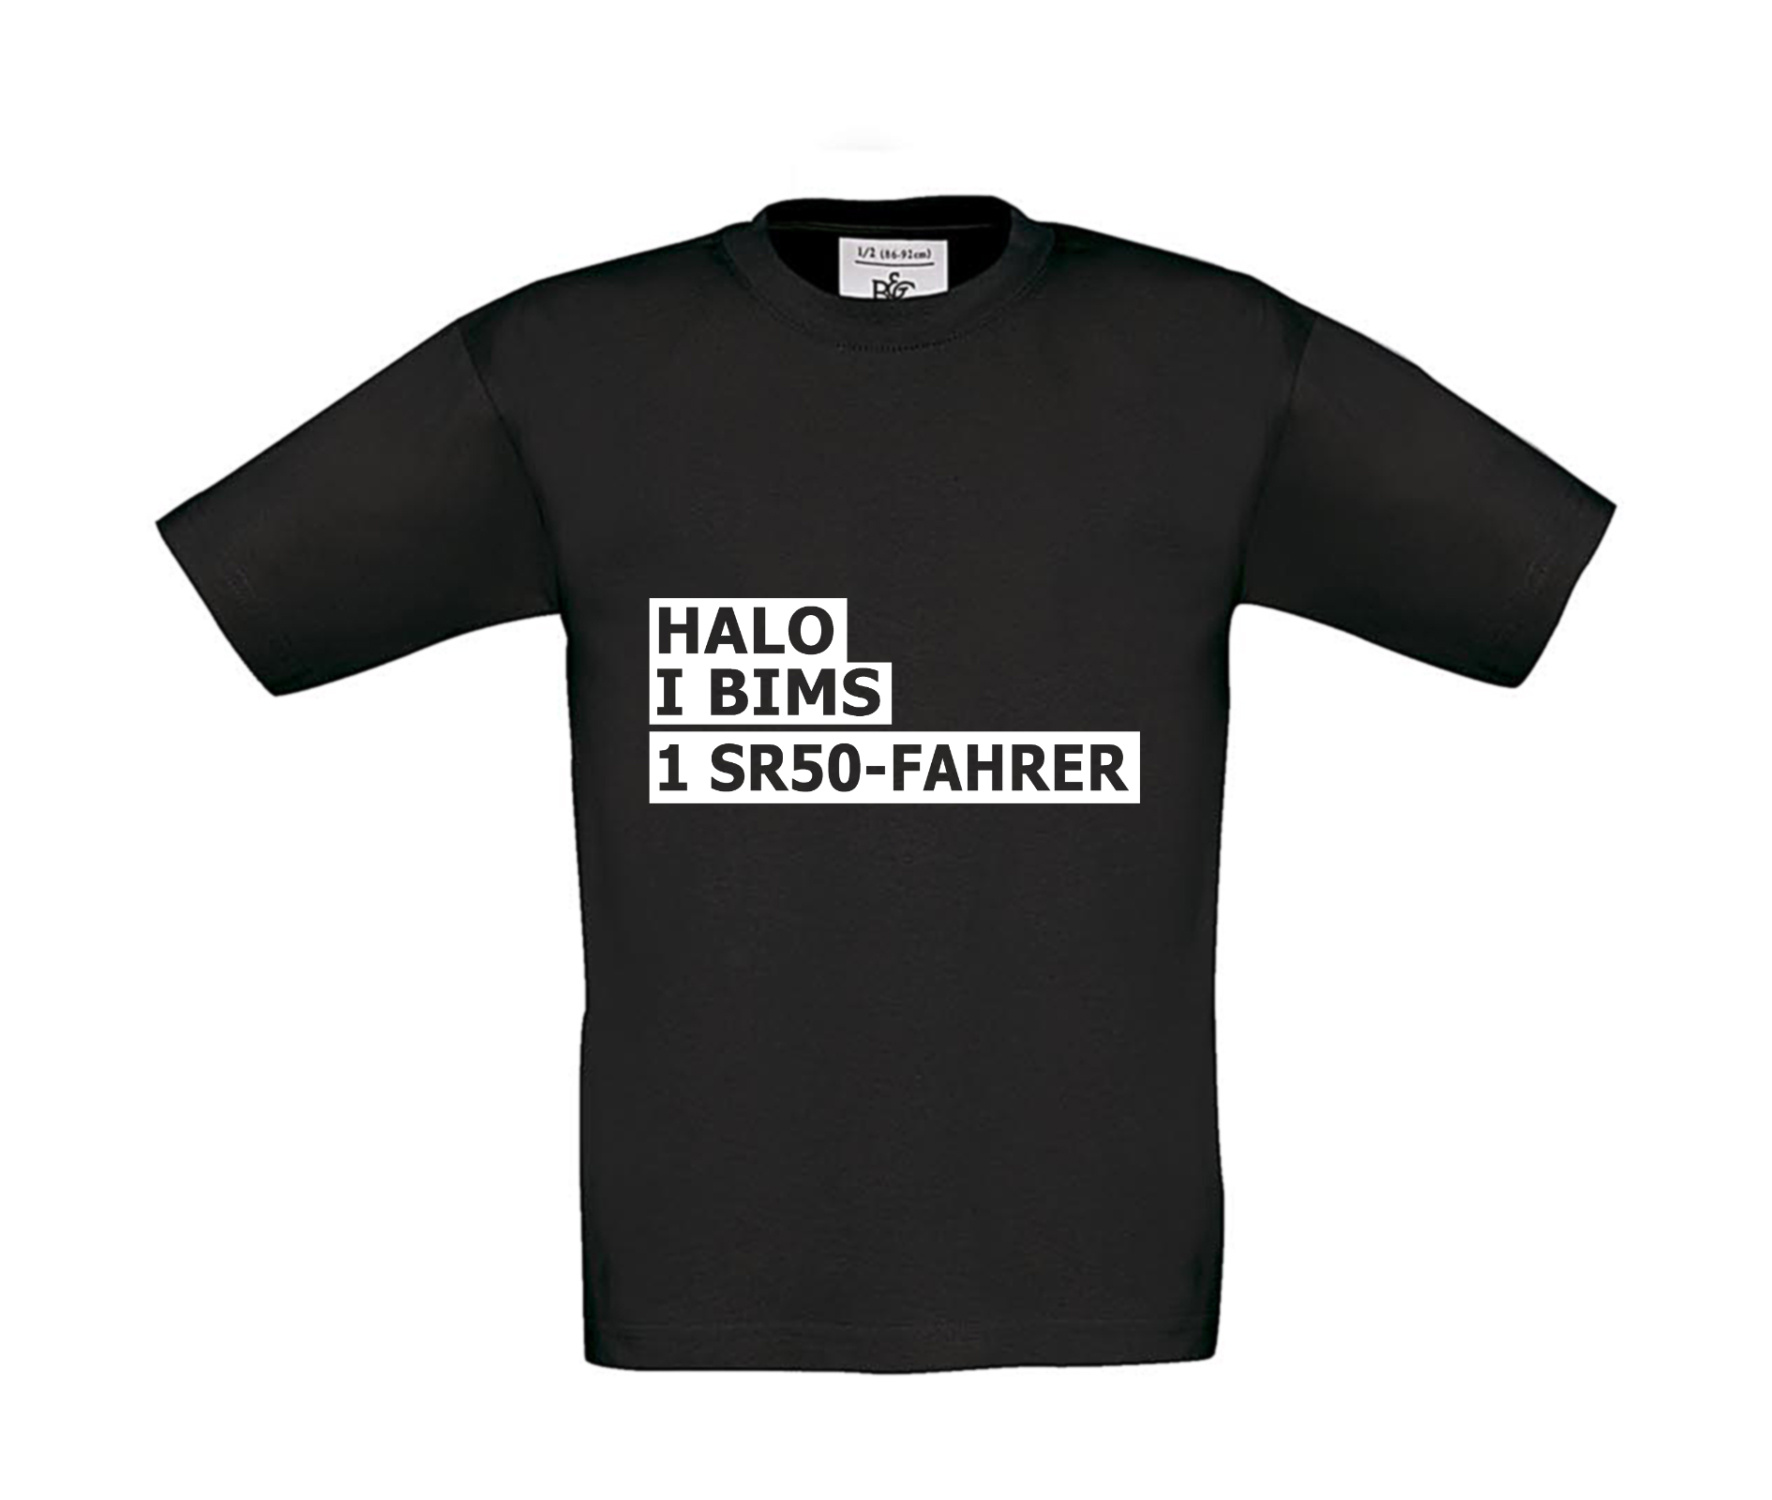 T-Shirt Kinder 2Takter - Halo I bims 1 SR50-Fahrer